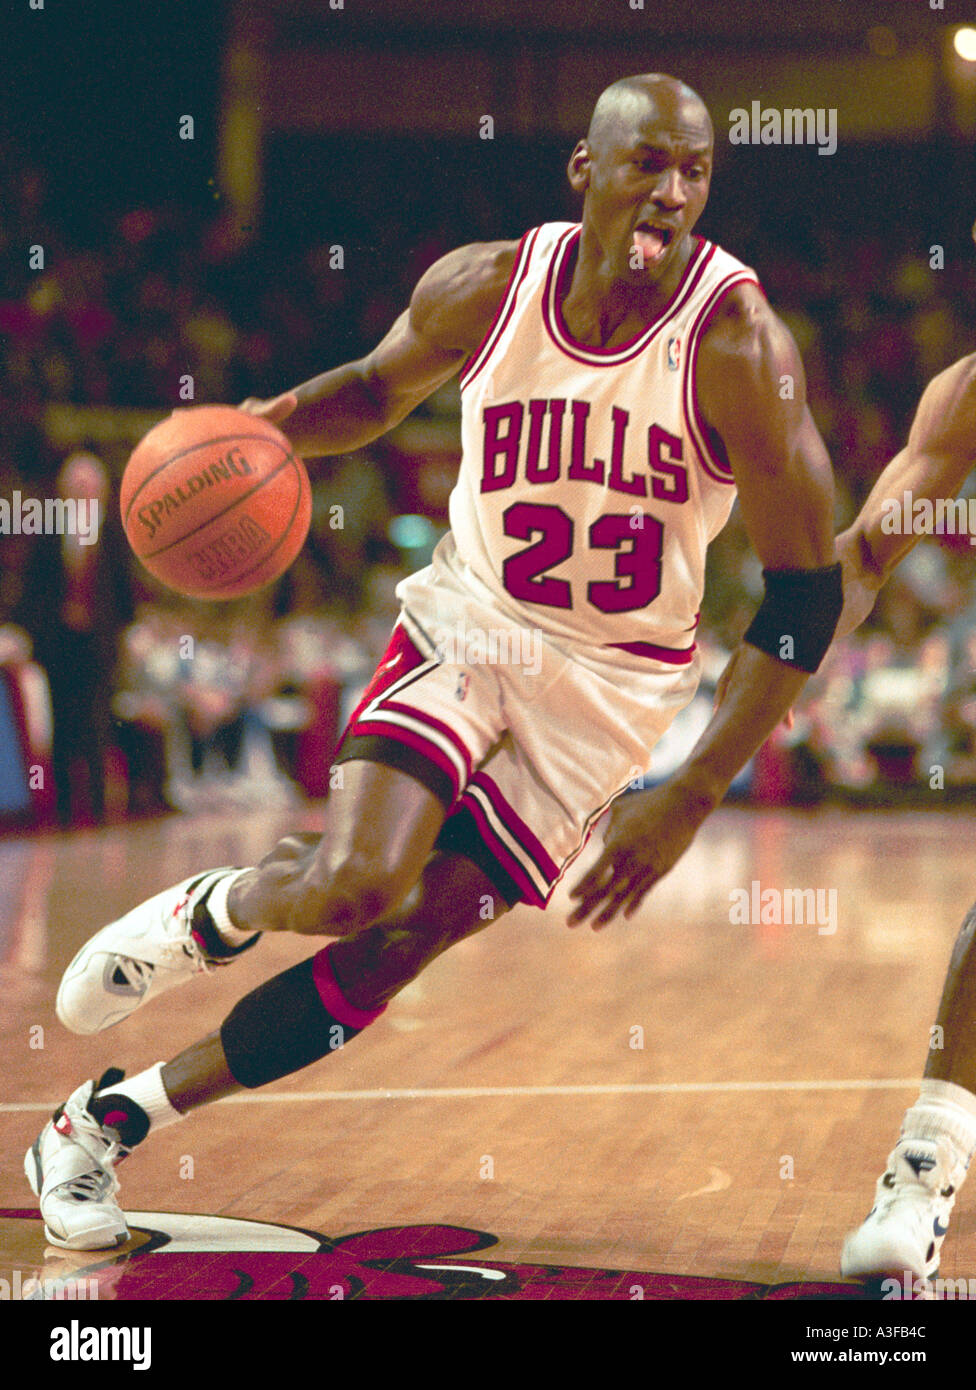 Chicago Bulls et star de la NBA Michael Jordan au panier au cours d'un match en 1995 Banque D'Images